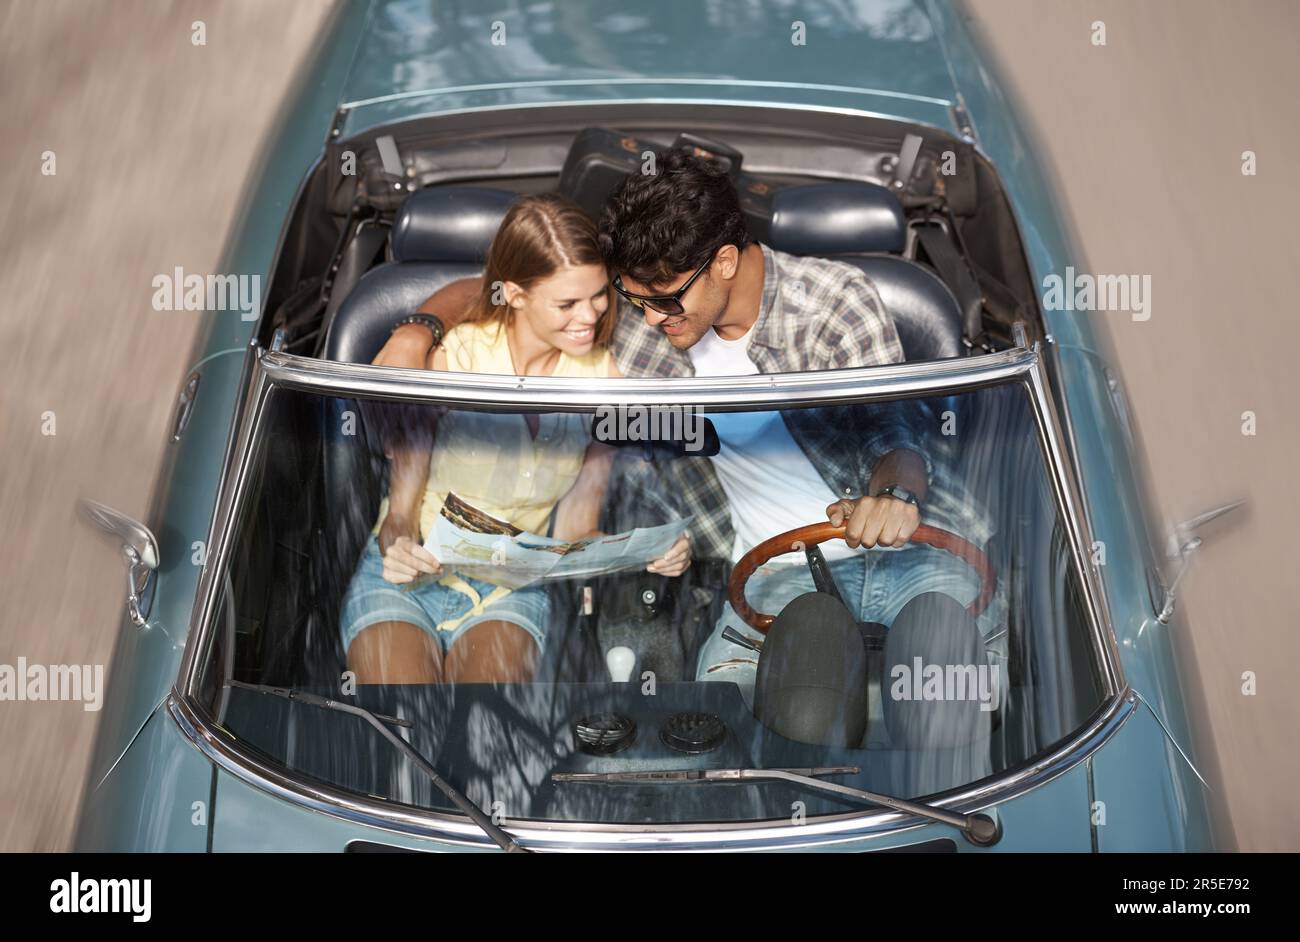 Unser lustiger Tag im Sportwagen. Zugeschnittenes Bild eines jungen Paares, das in einem offenen Sportwagen sitzt. Stockfoto